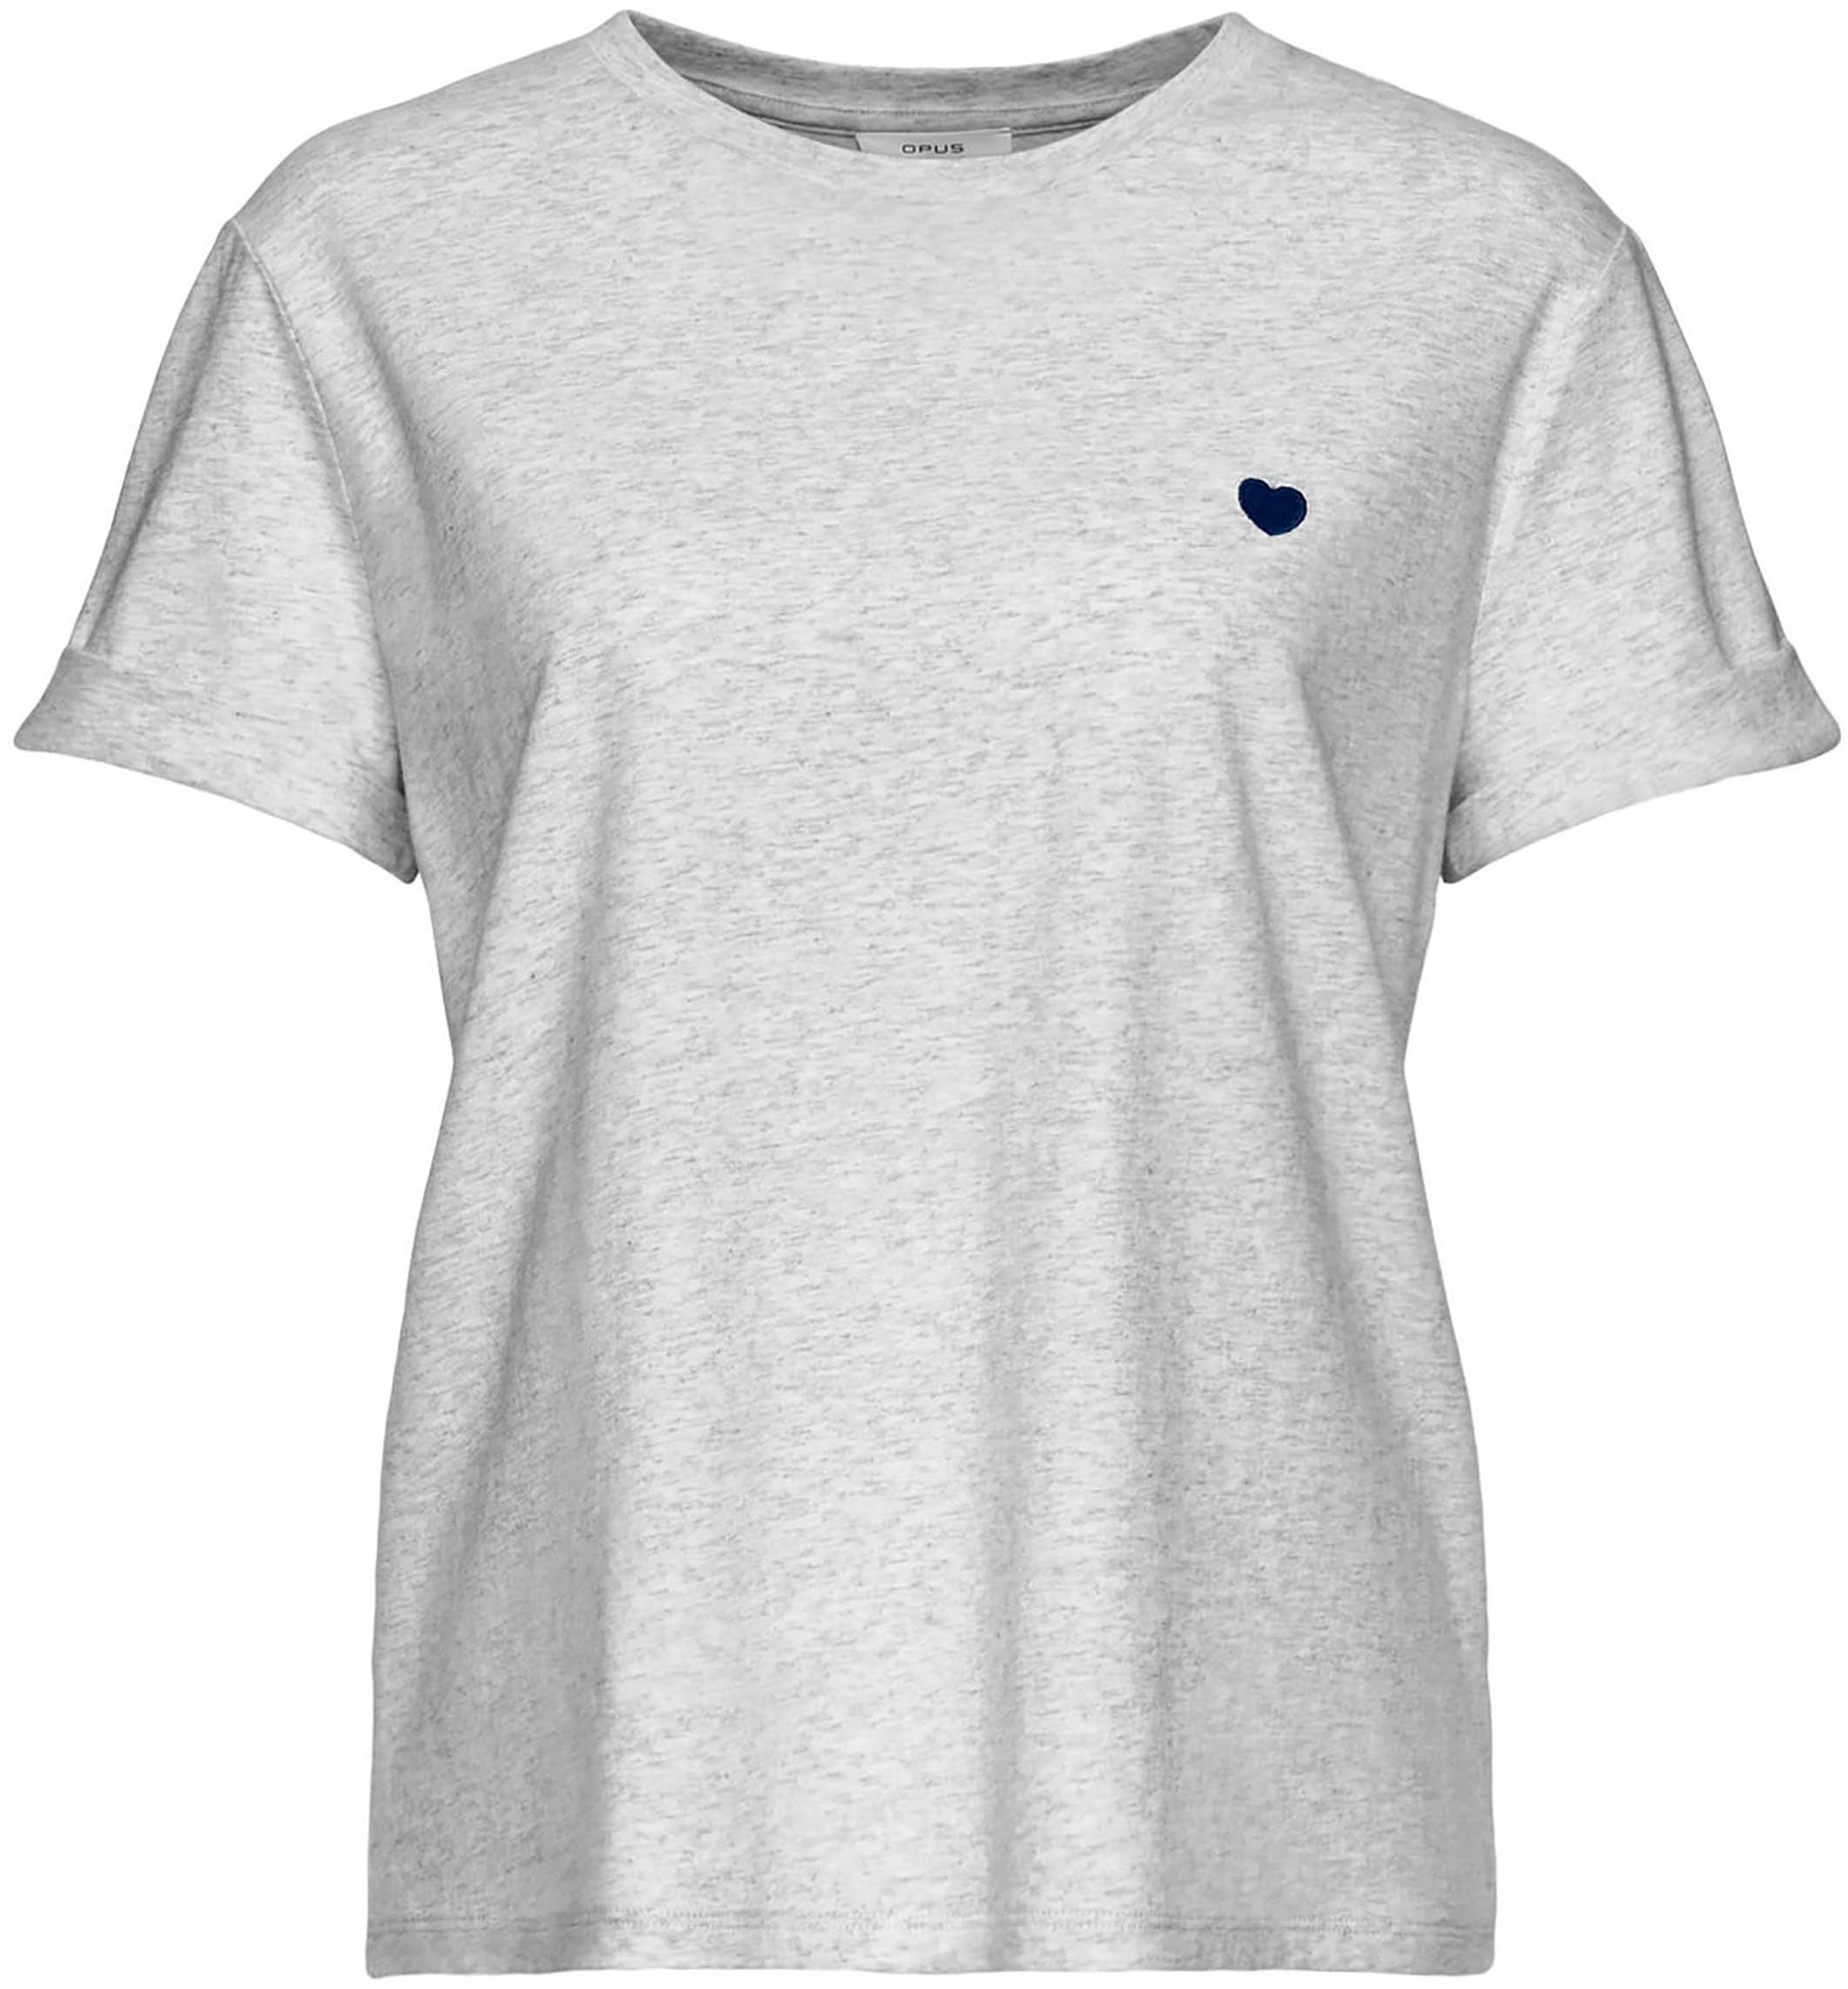 kaufen OTTO im OPUS Online Shop kleiner mit Herz-Stickerei »Serz«, T-Shirt